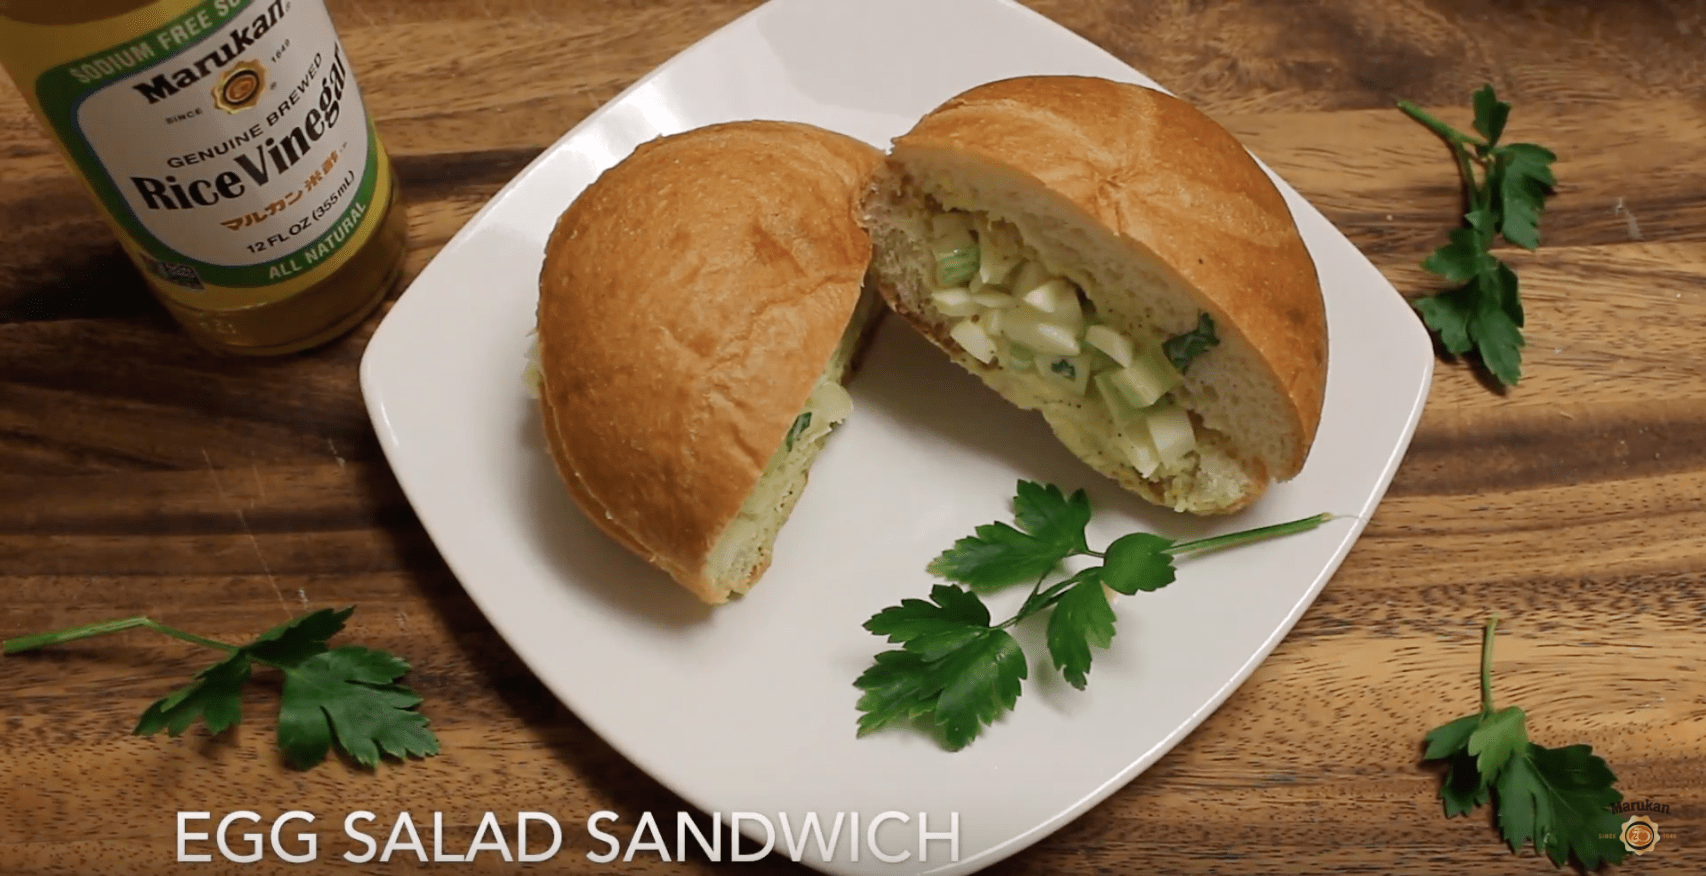 Marukan Egg Salad Sandwich